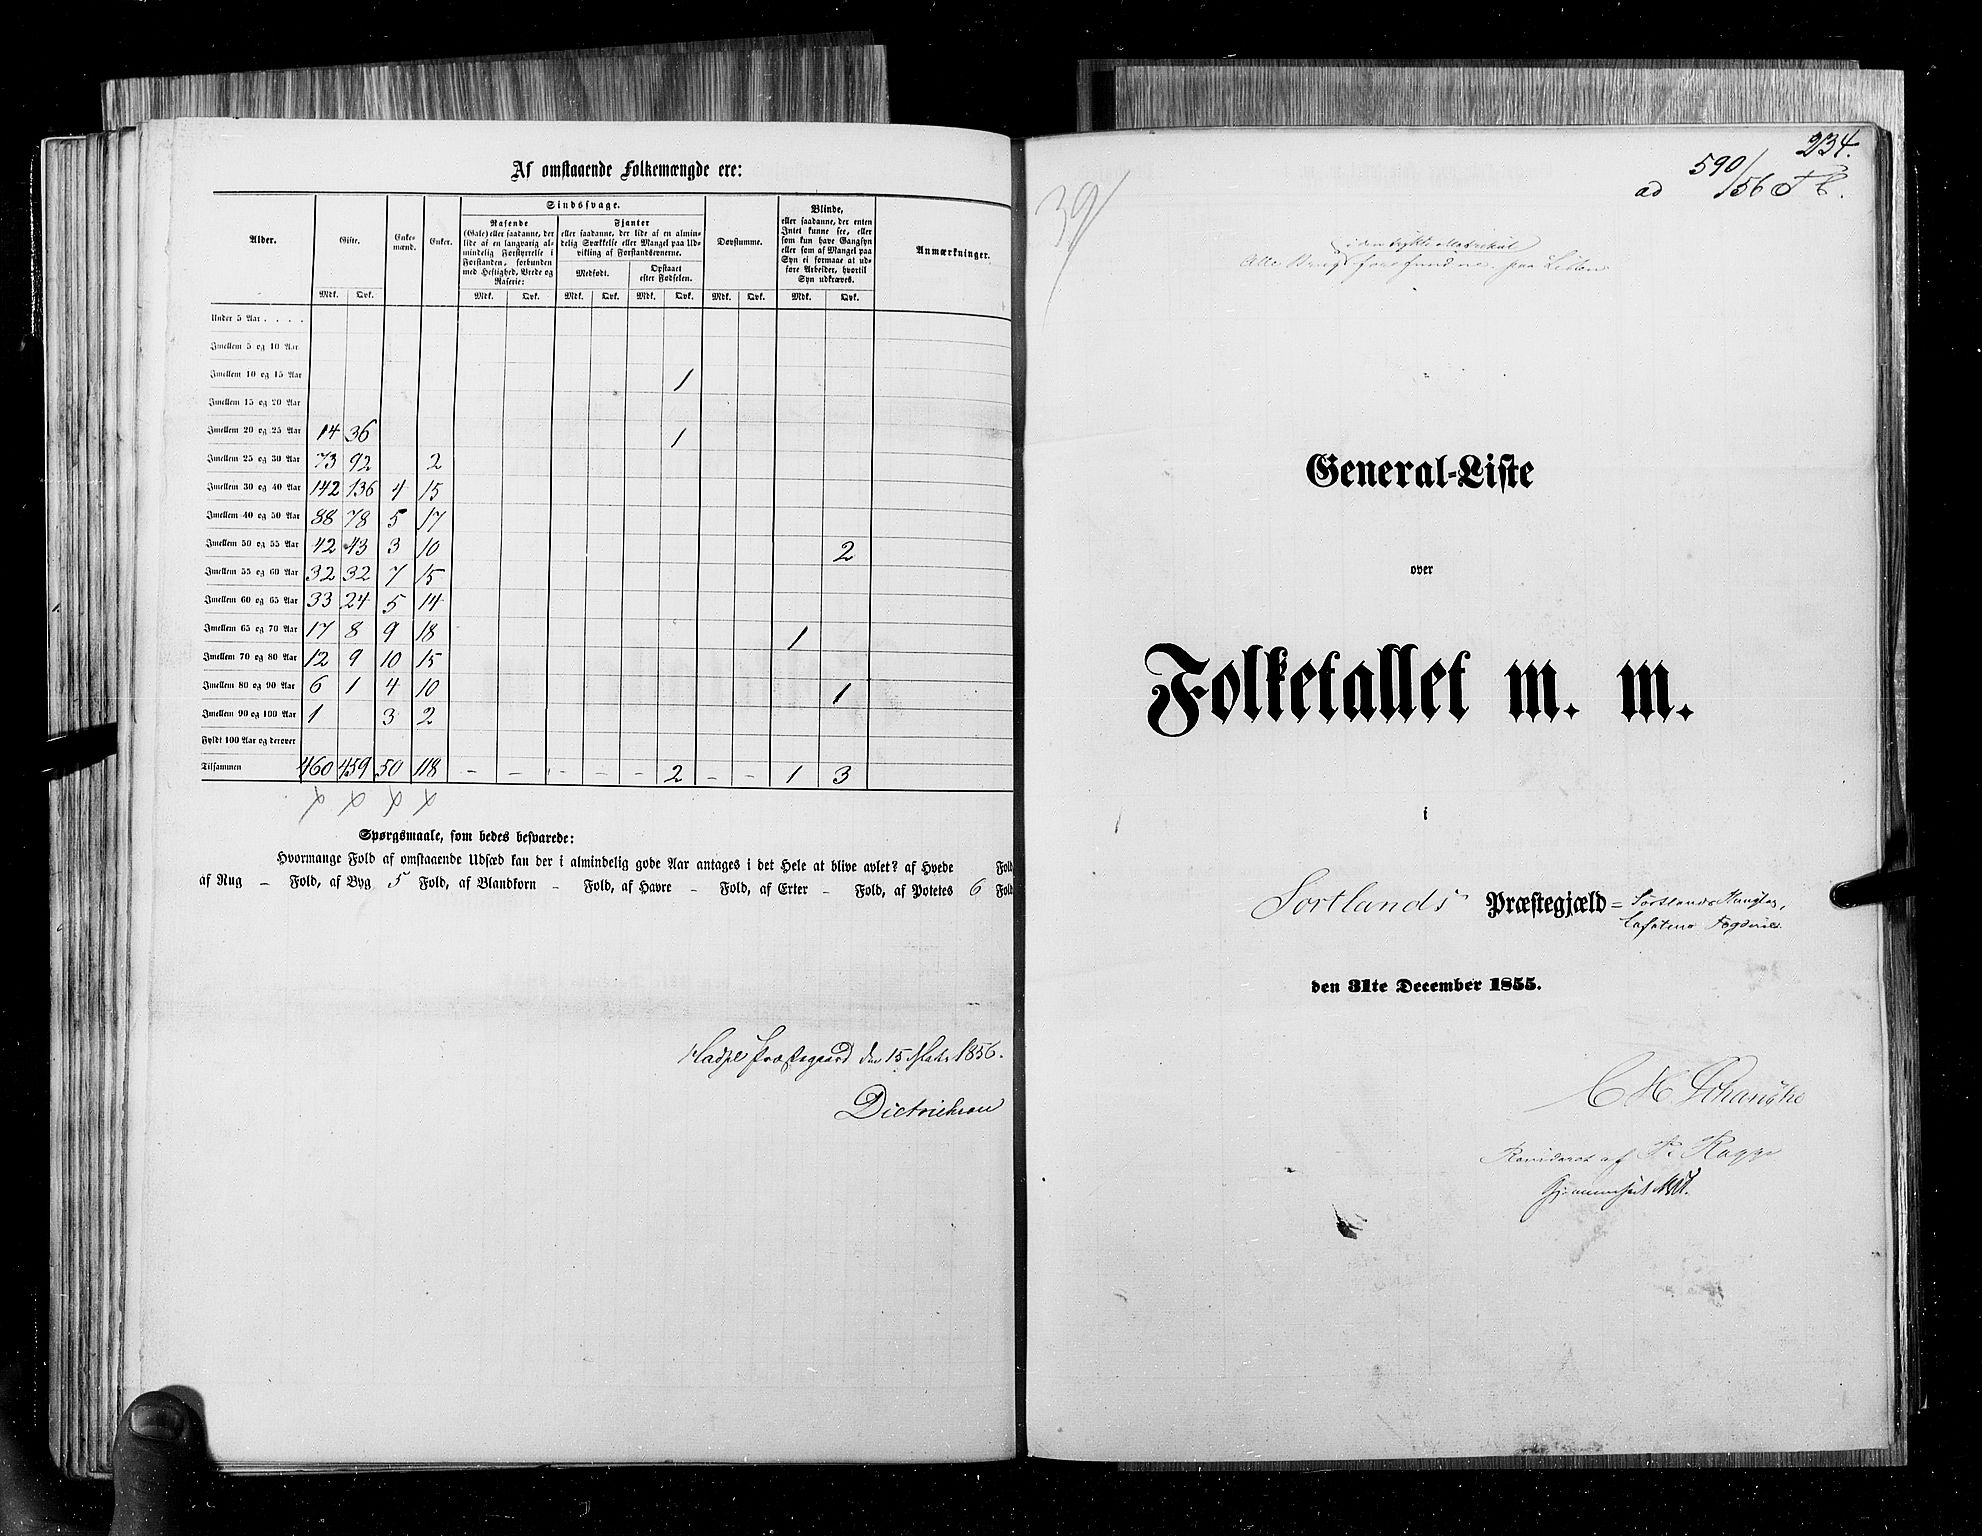 RA, Folketellingen 1855, bind 6B: Nordland amt og Finnmarken amt, 1855, s. 234